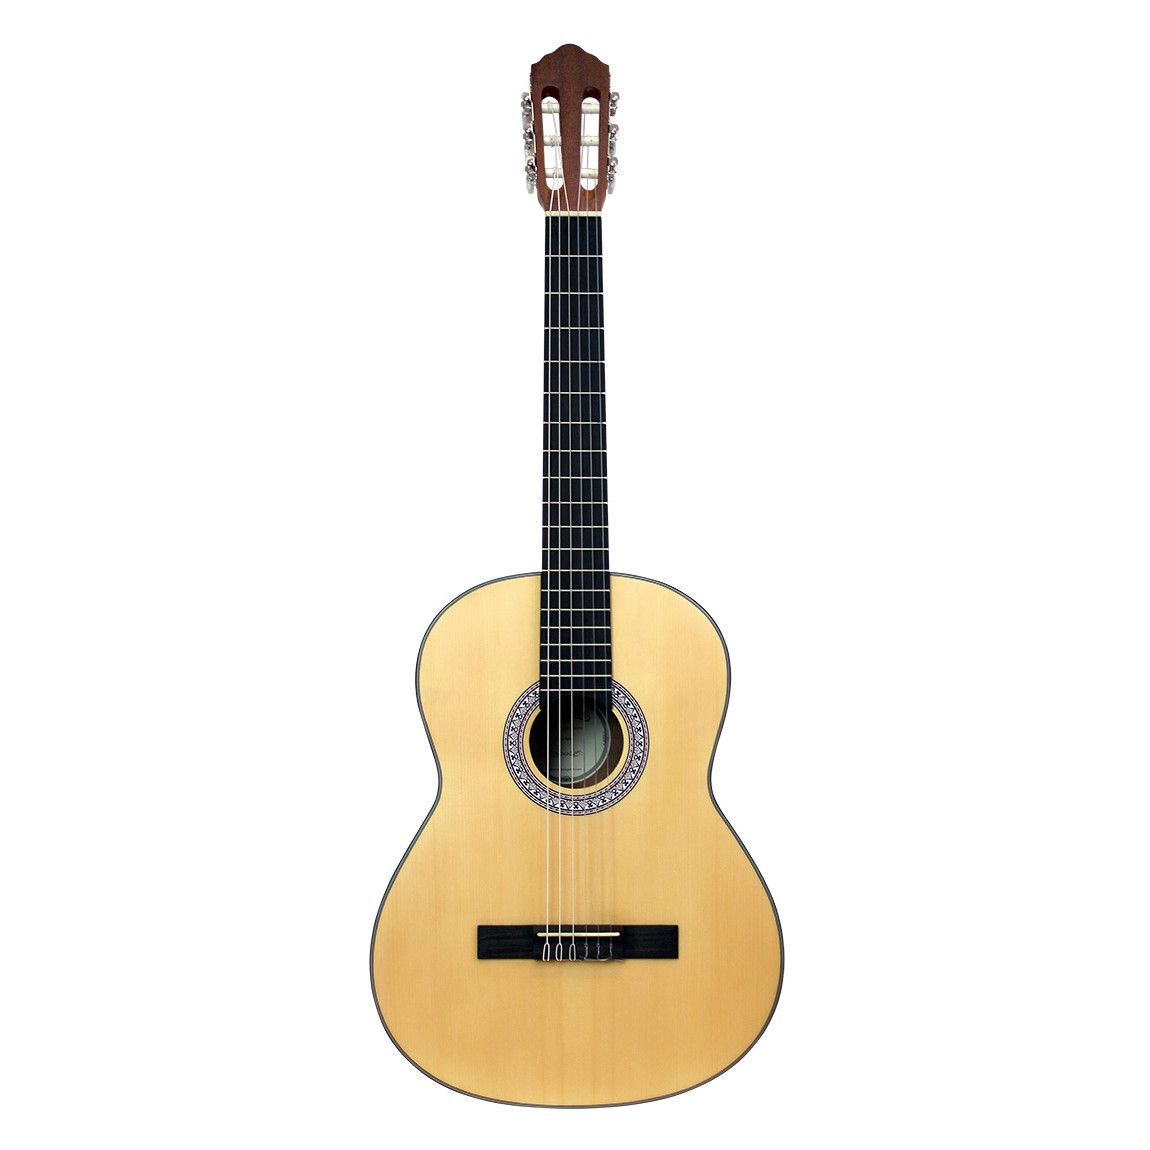 Køb Santana B8 v2 klassisk 4/4 guitar - Satin - Pris 1195.00 kr.